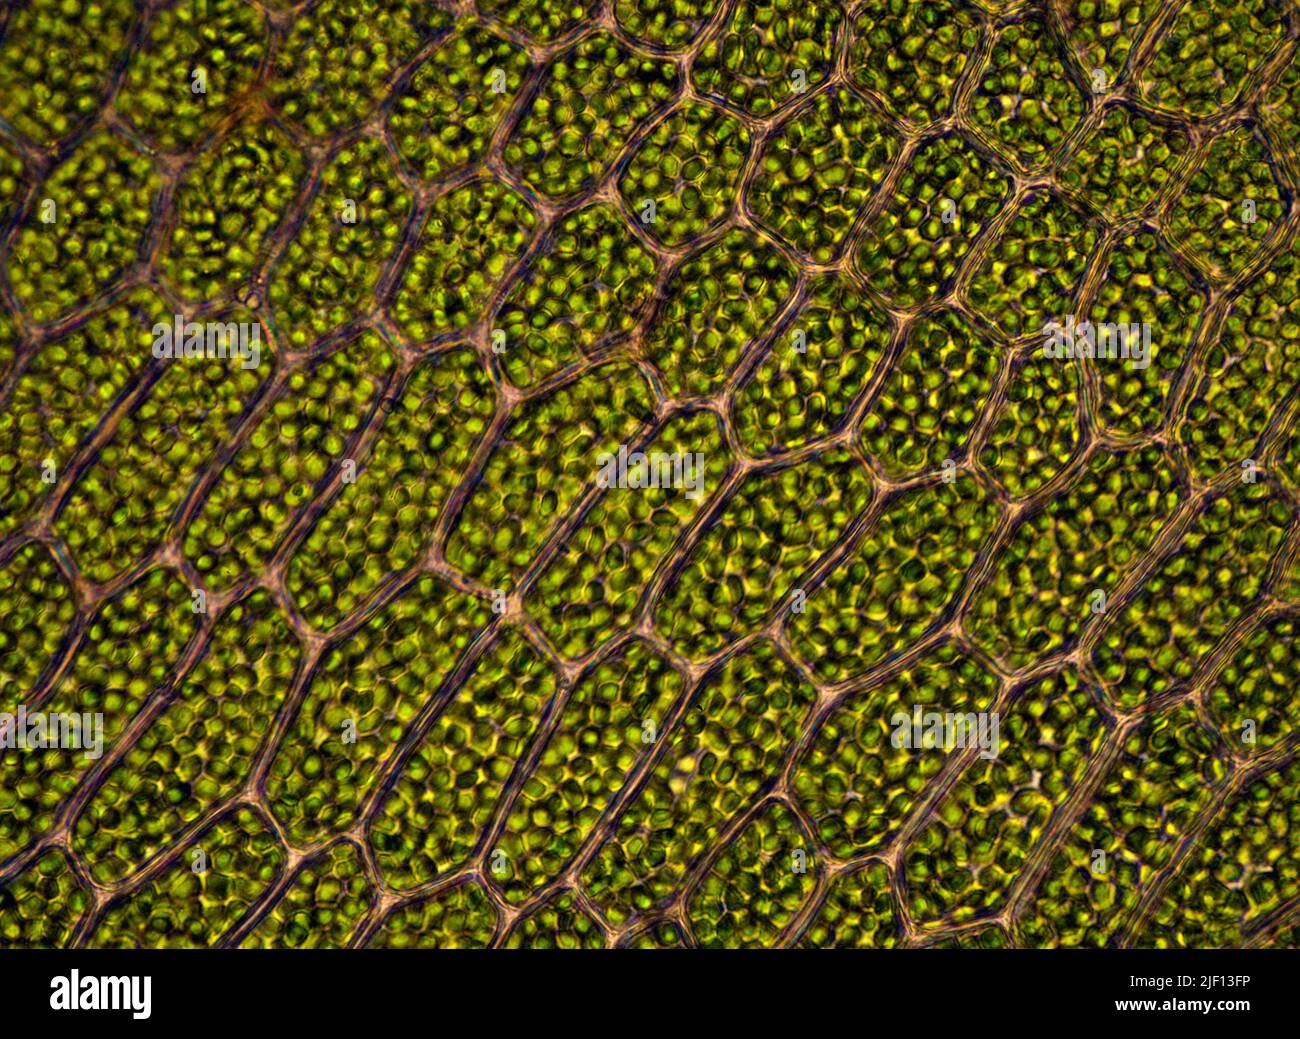 Cellules avec chloroplastes chez les Bryophytes (Mnium sp.). Depuis le sud-ouest de la Norvège. Banque D'Images